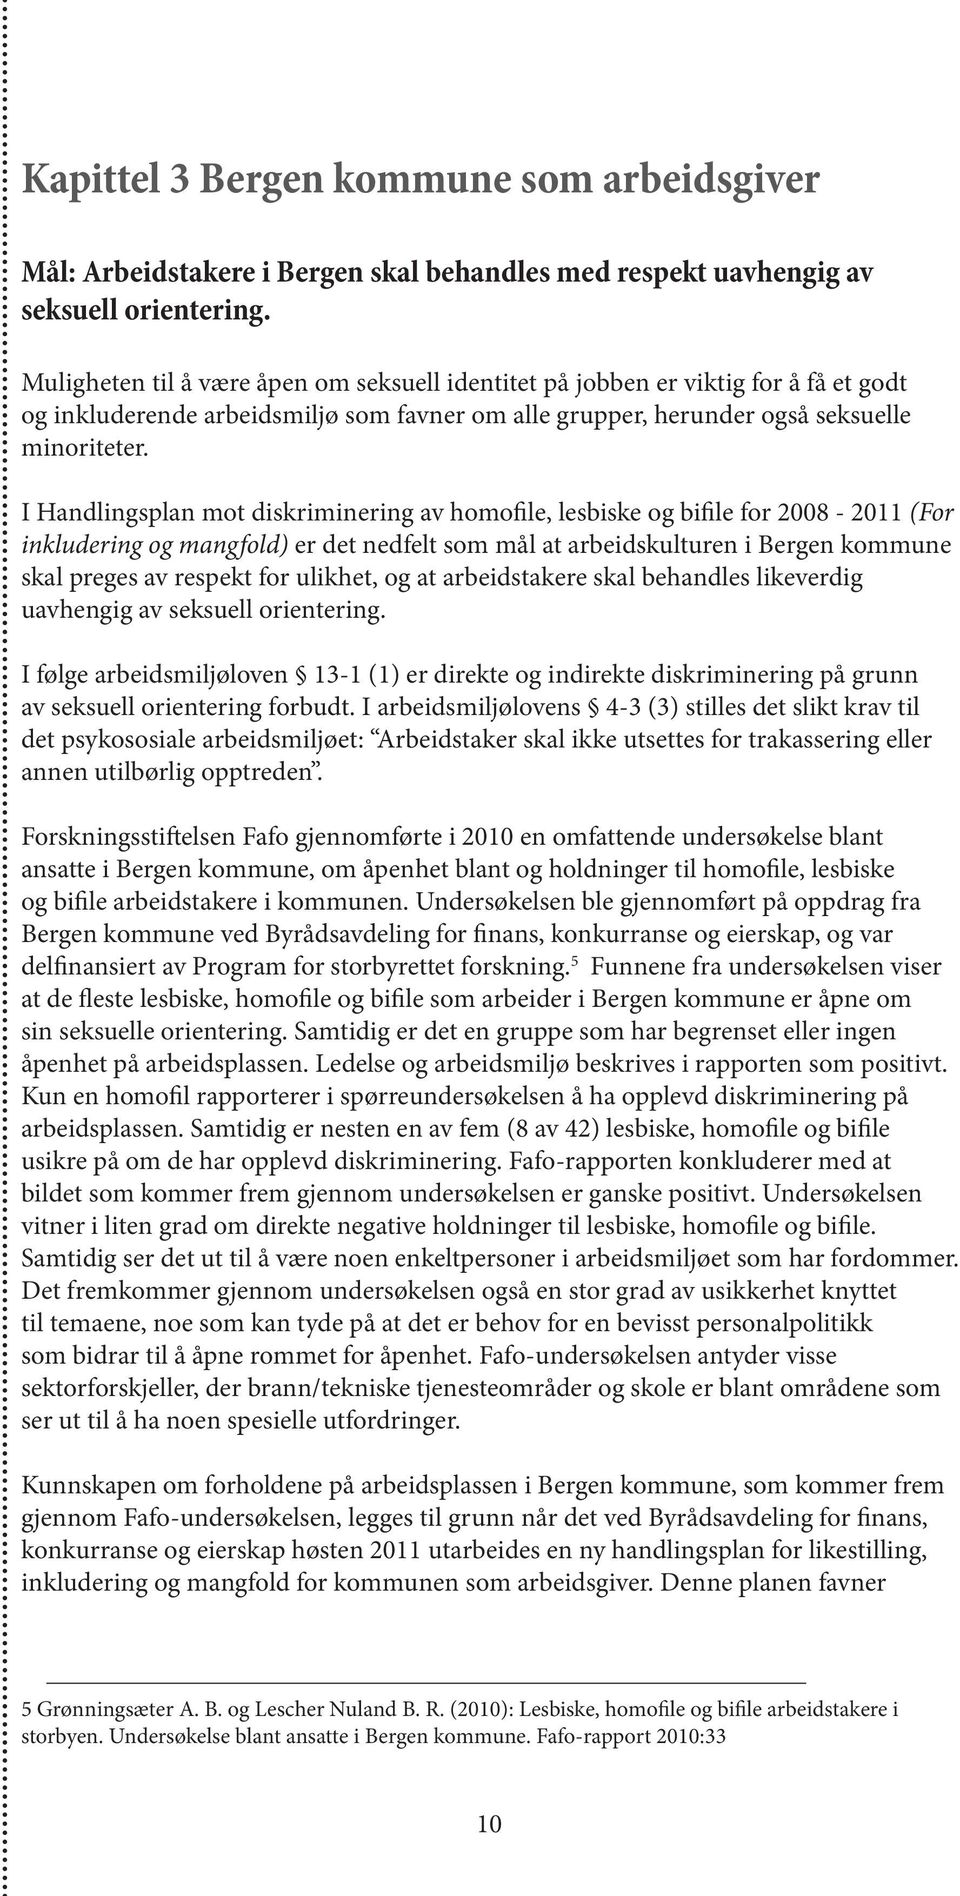 I Handlingsplan mot diskriminering av homofile, lesbiske og bifile for 2008-2011 (For inkludering og mangfold) er det nedfelt som mål at arbeidskulturen i Bergen kommune skal preges av respekt for